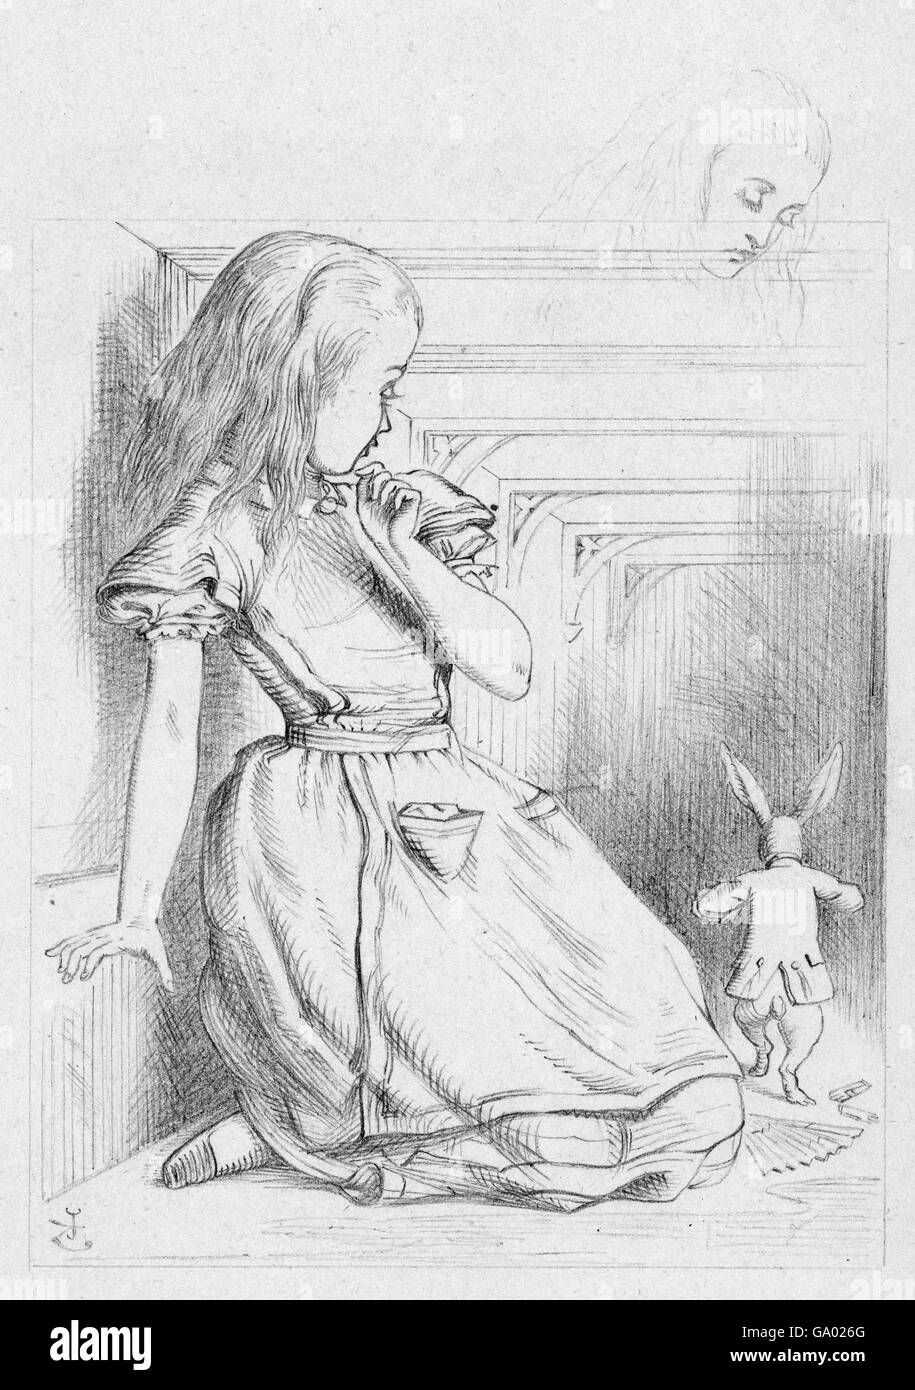 Alice im Wunderland. 'The Rabbit Scurried', eine Illustration von Sir John Tenniel für Lewis Carrolls 'Alice im Wunderland' mit Alice und dem Weißen Kaninchen. Bleistiftzeichnung auf Papier, c,1866. Stockfoto